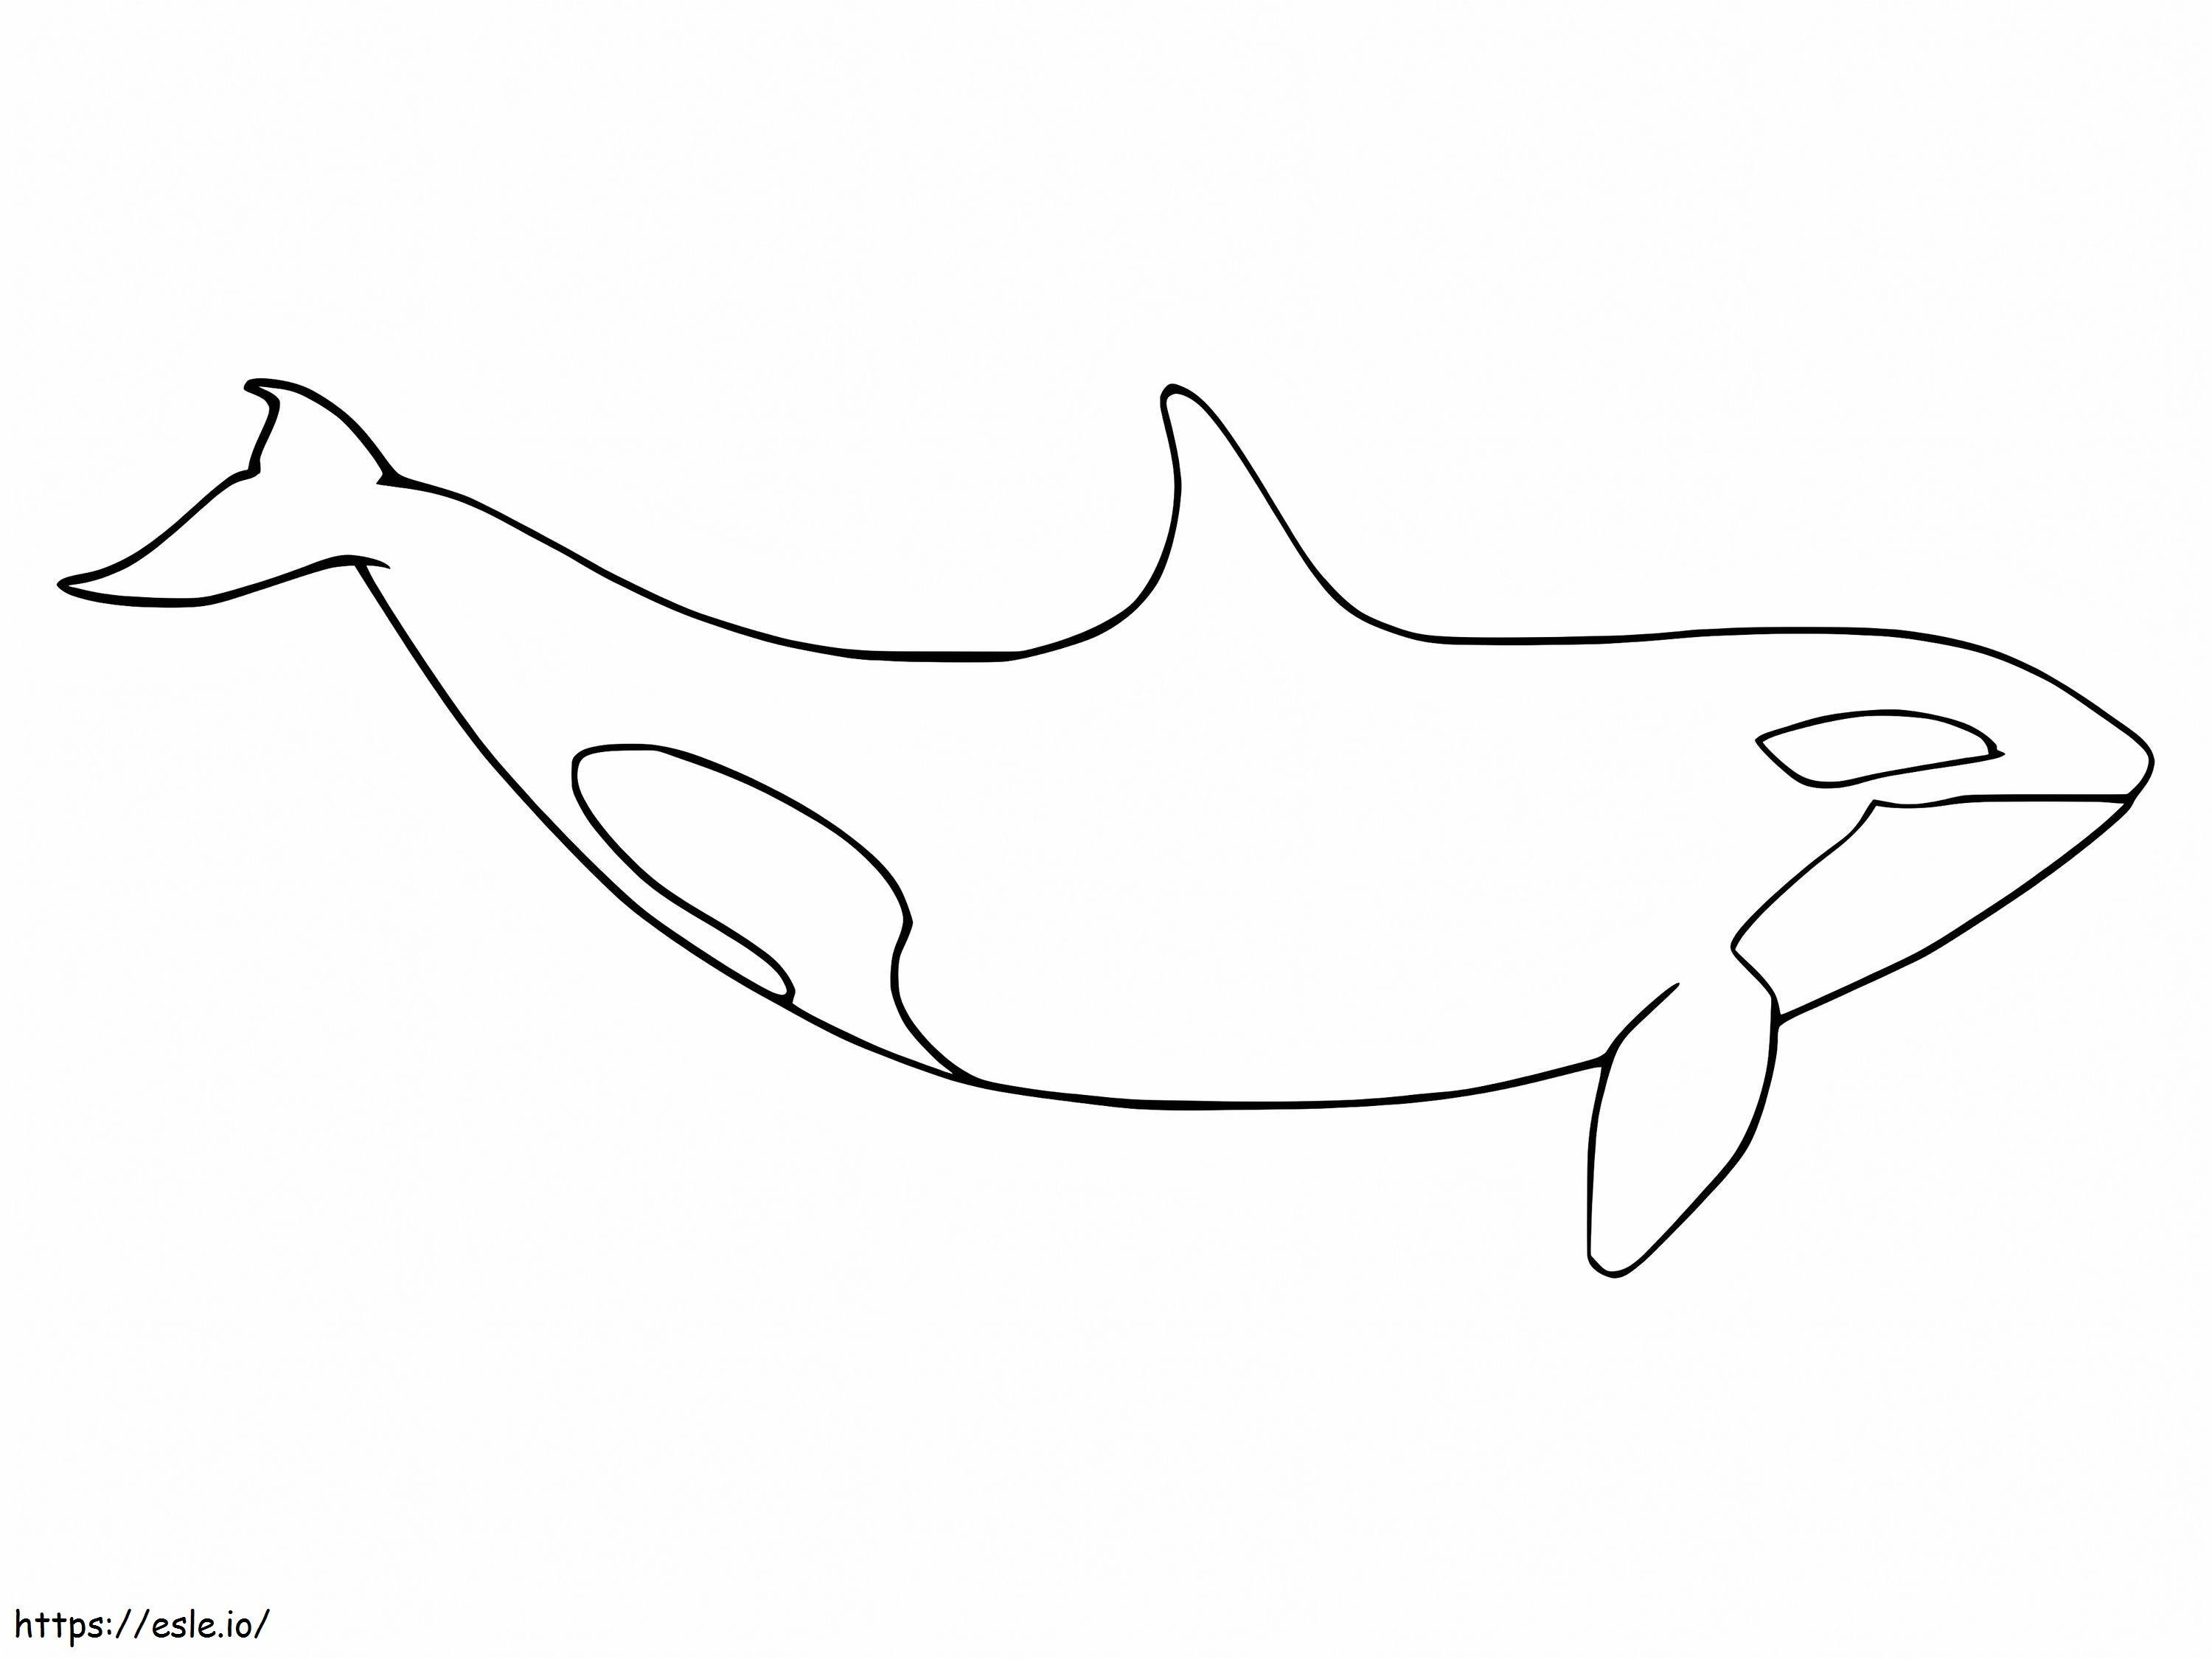 Paus Orca yang Mudah Gambar Mewarnai